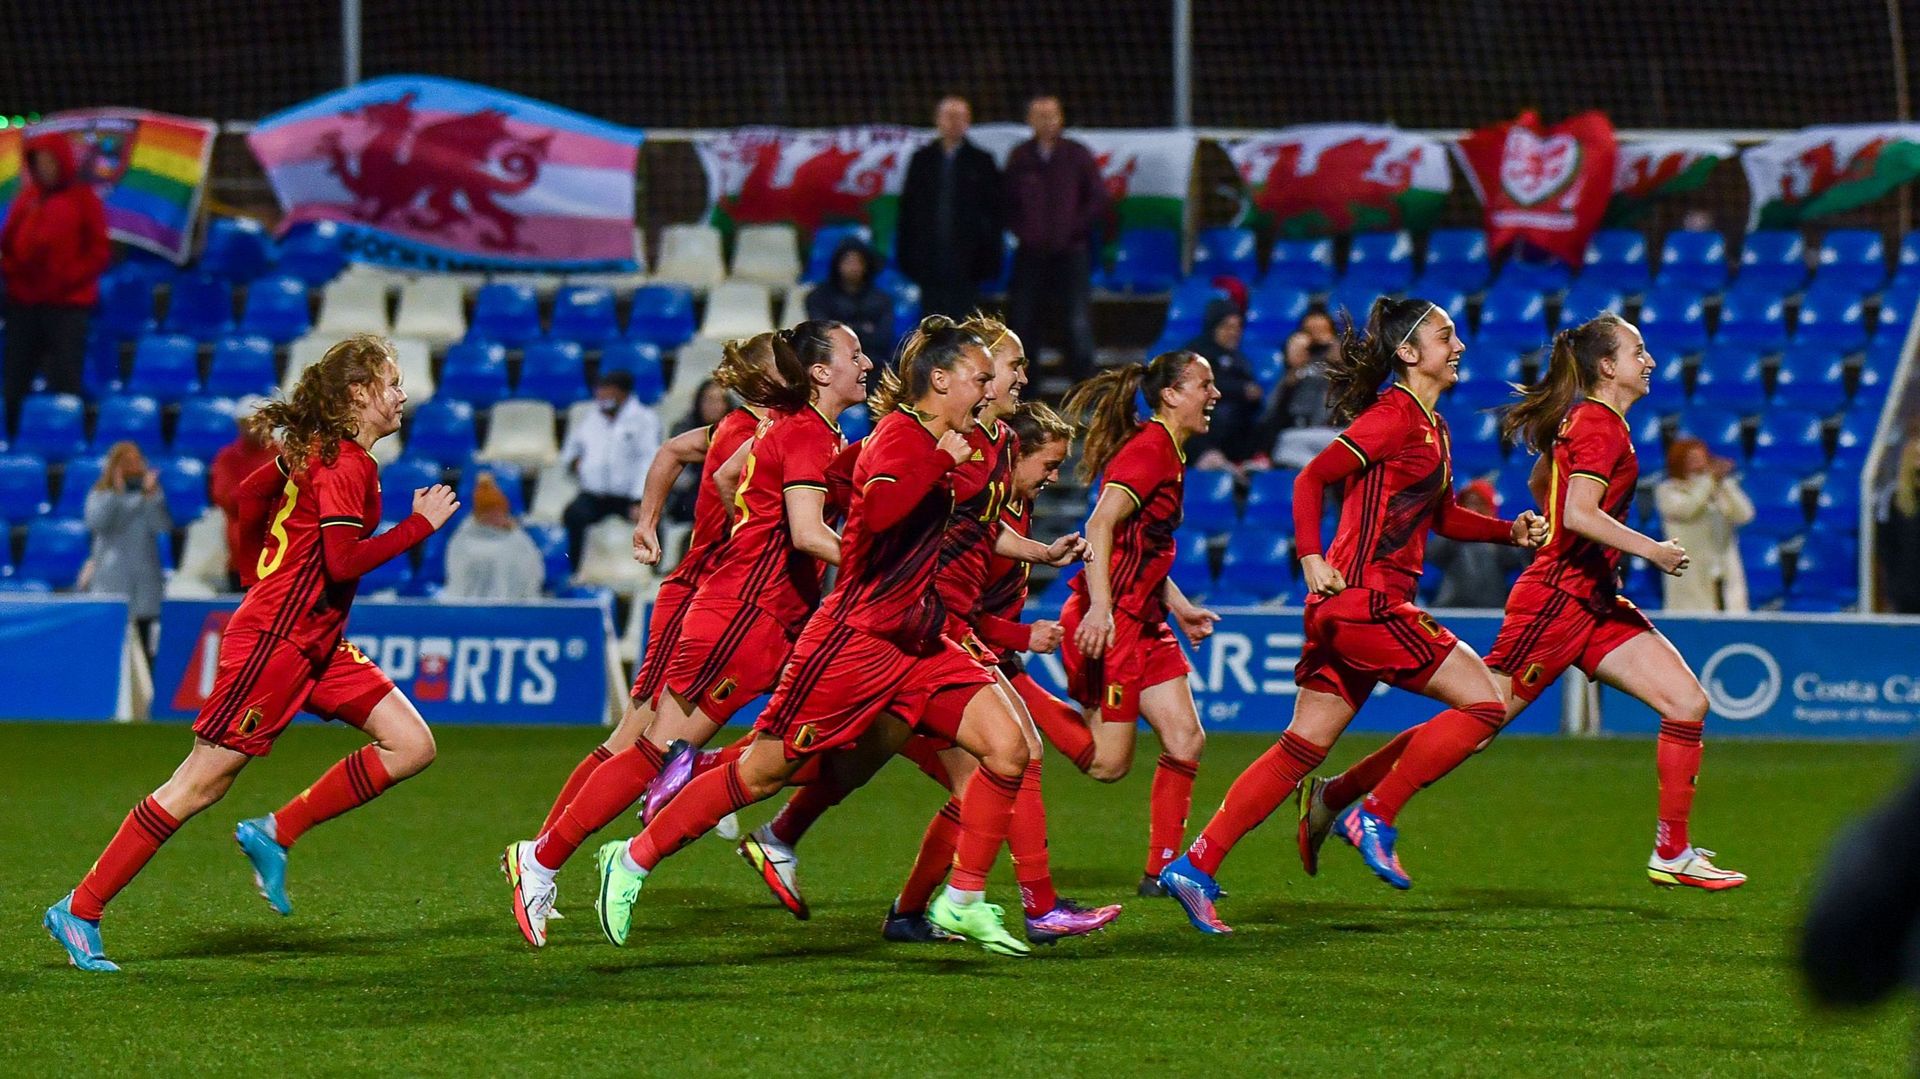 La Belgique jouera la finale de la Pinatar Cup, un tournoi international de football féminin, après sa victoire acquise aux tirs au but contre le pays de Galles (0-0, 3-1 t.a.b.) samedi dans la région de Murcie en Espagne.